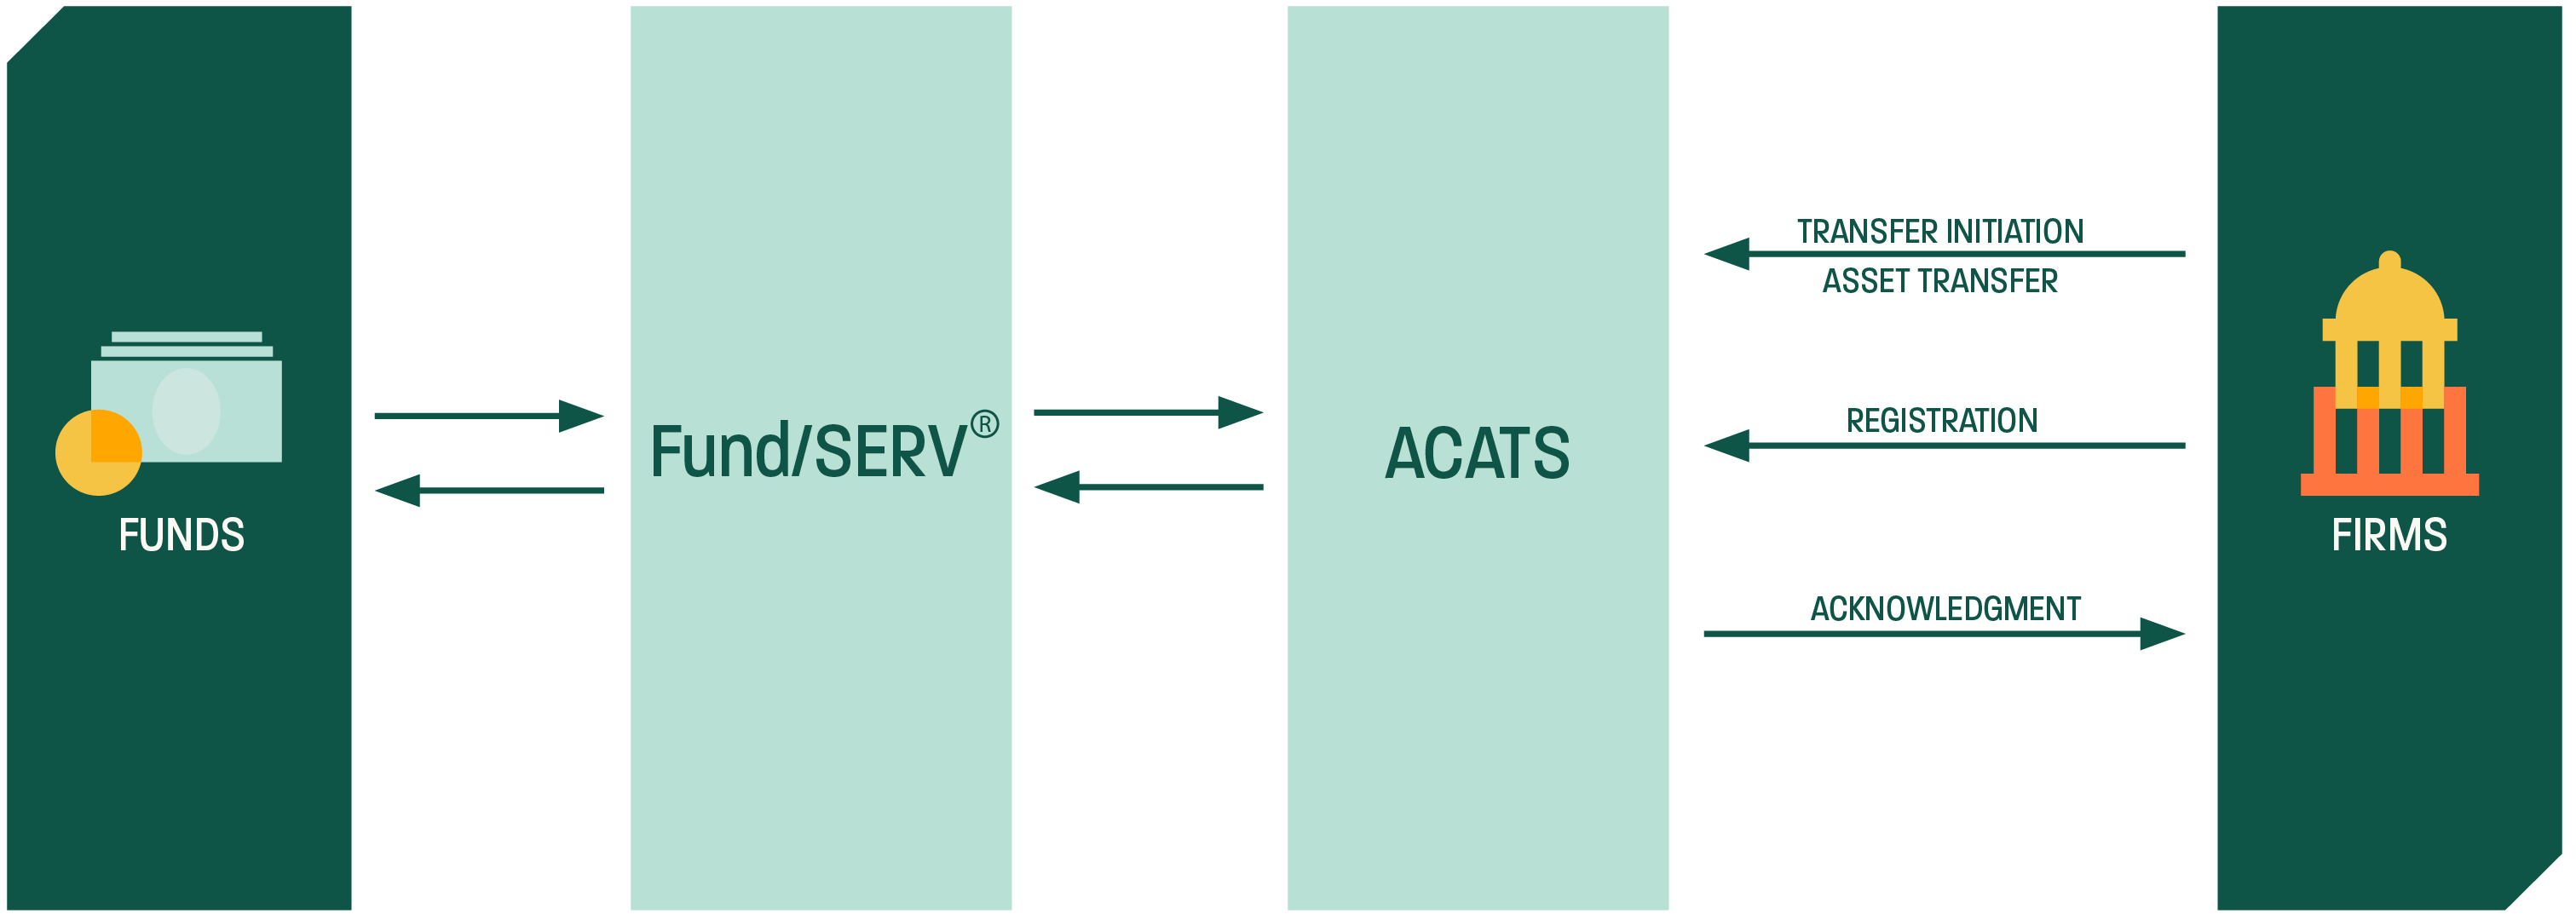 Mutual Fund Services - ACATS-Fund/SERV Firm to Fund Schematic